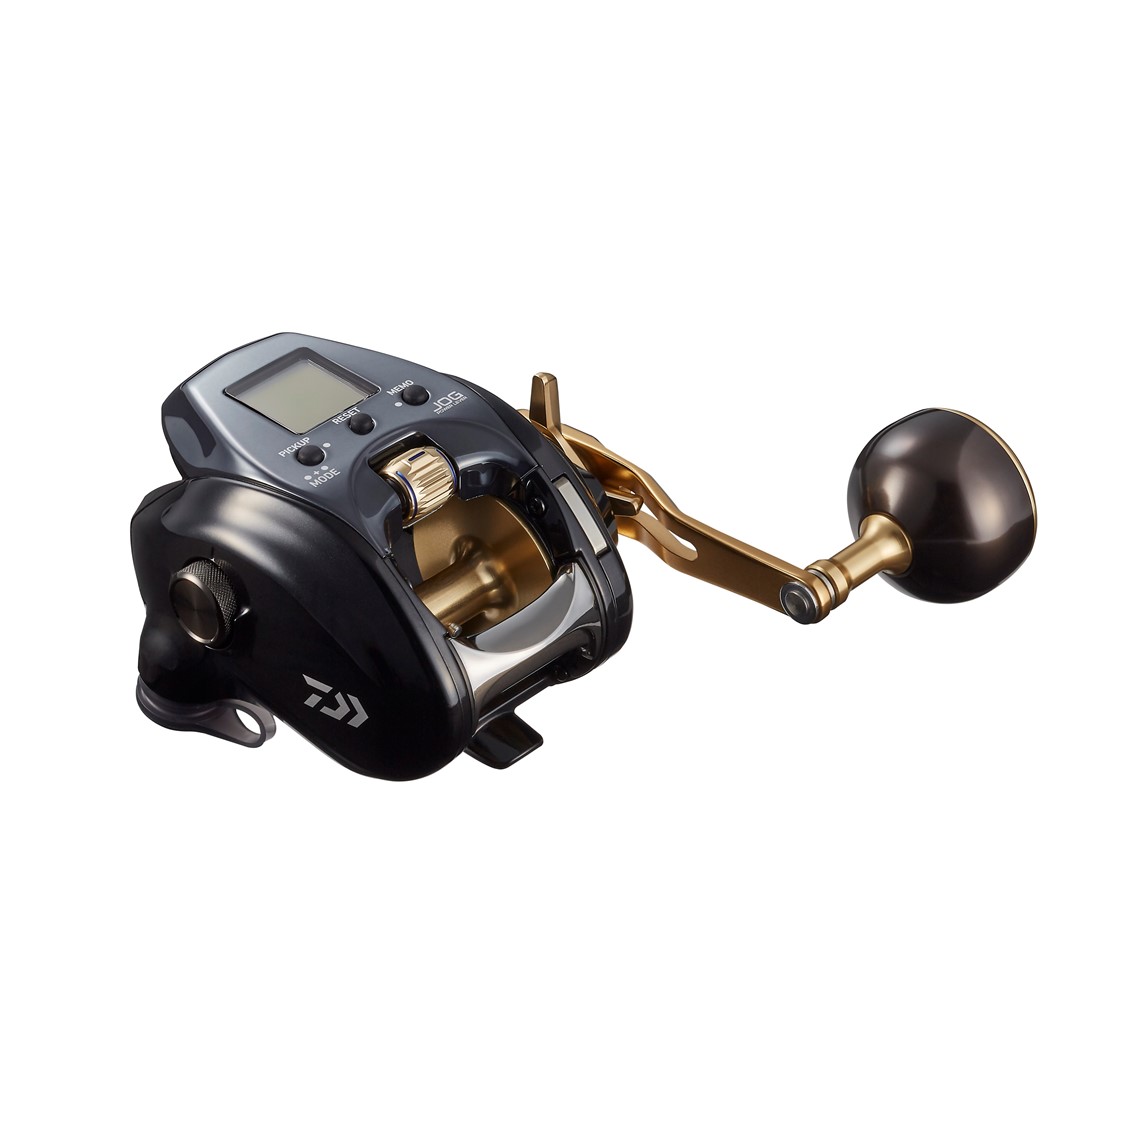 ダイワ 21 シーボーグG 300J 右ハンドル (電動リール) - 釣り具の販売